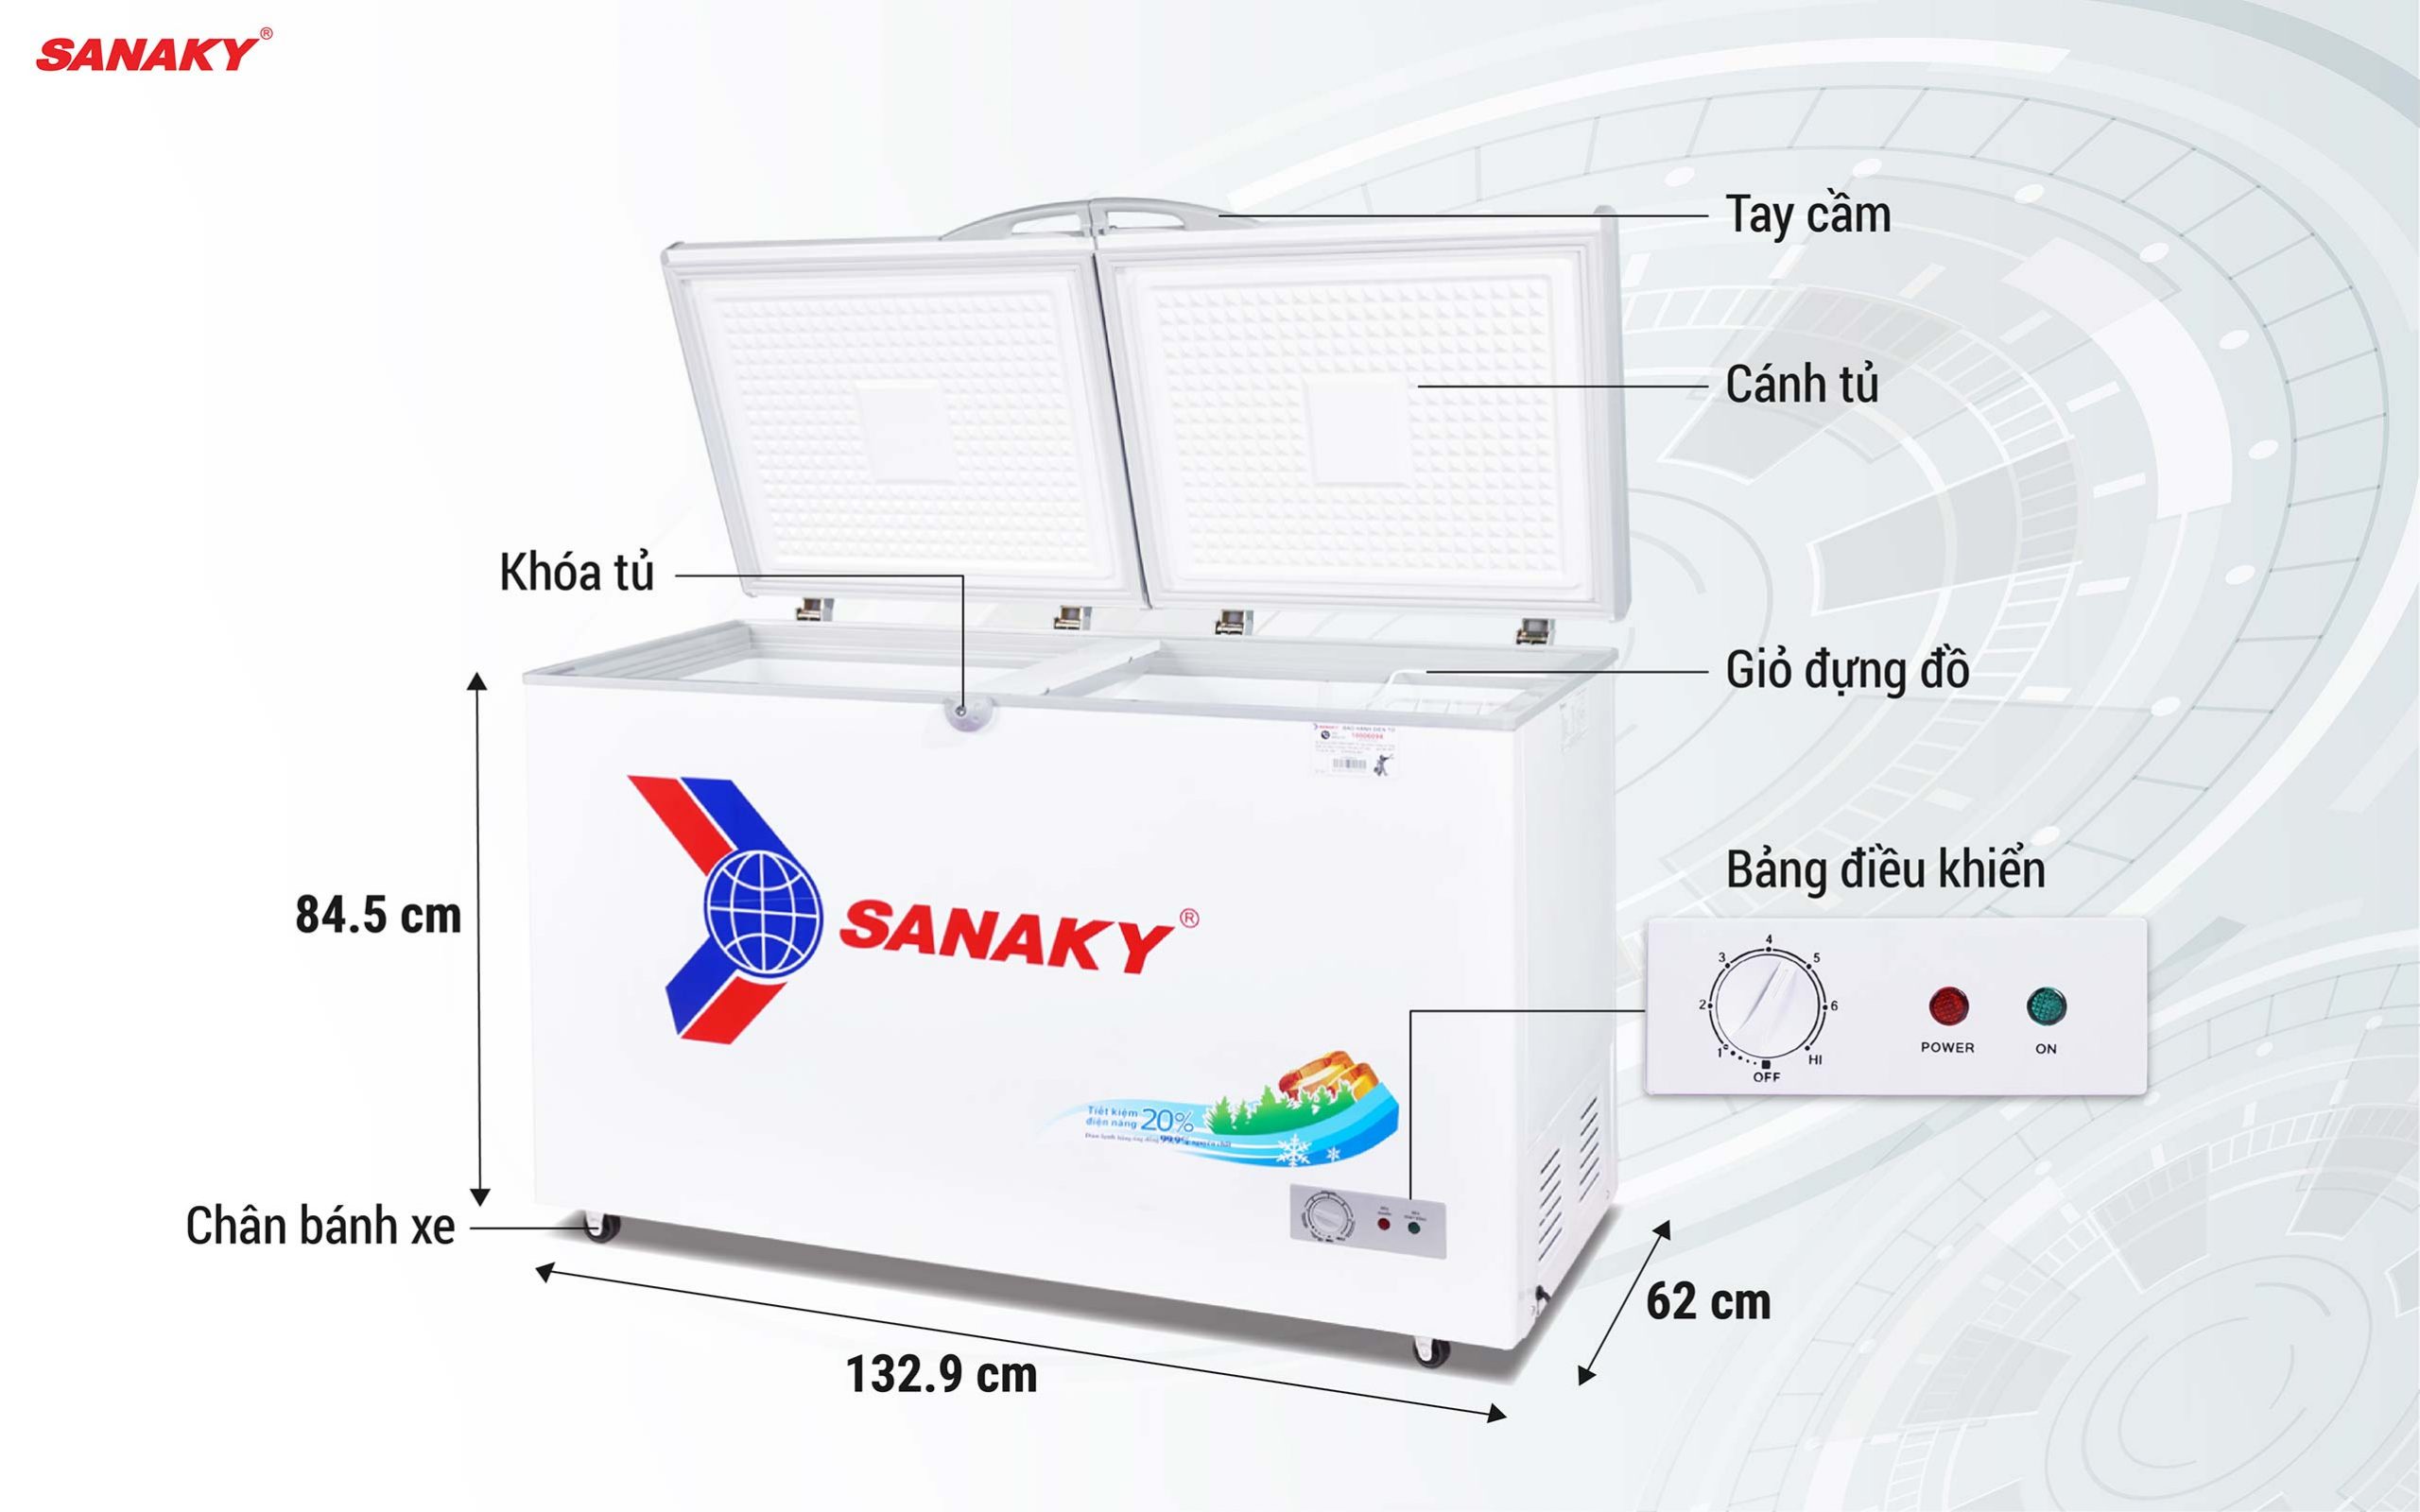 Tủ Đông Sanaky VH-4099A1 305 lít 1 ngăn 2 cánh